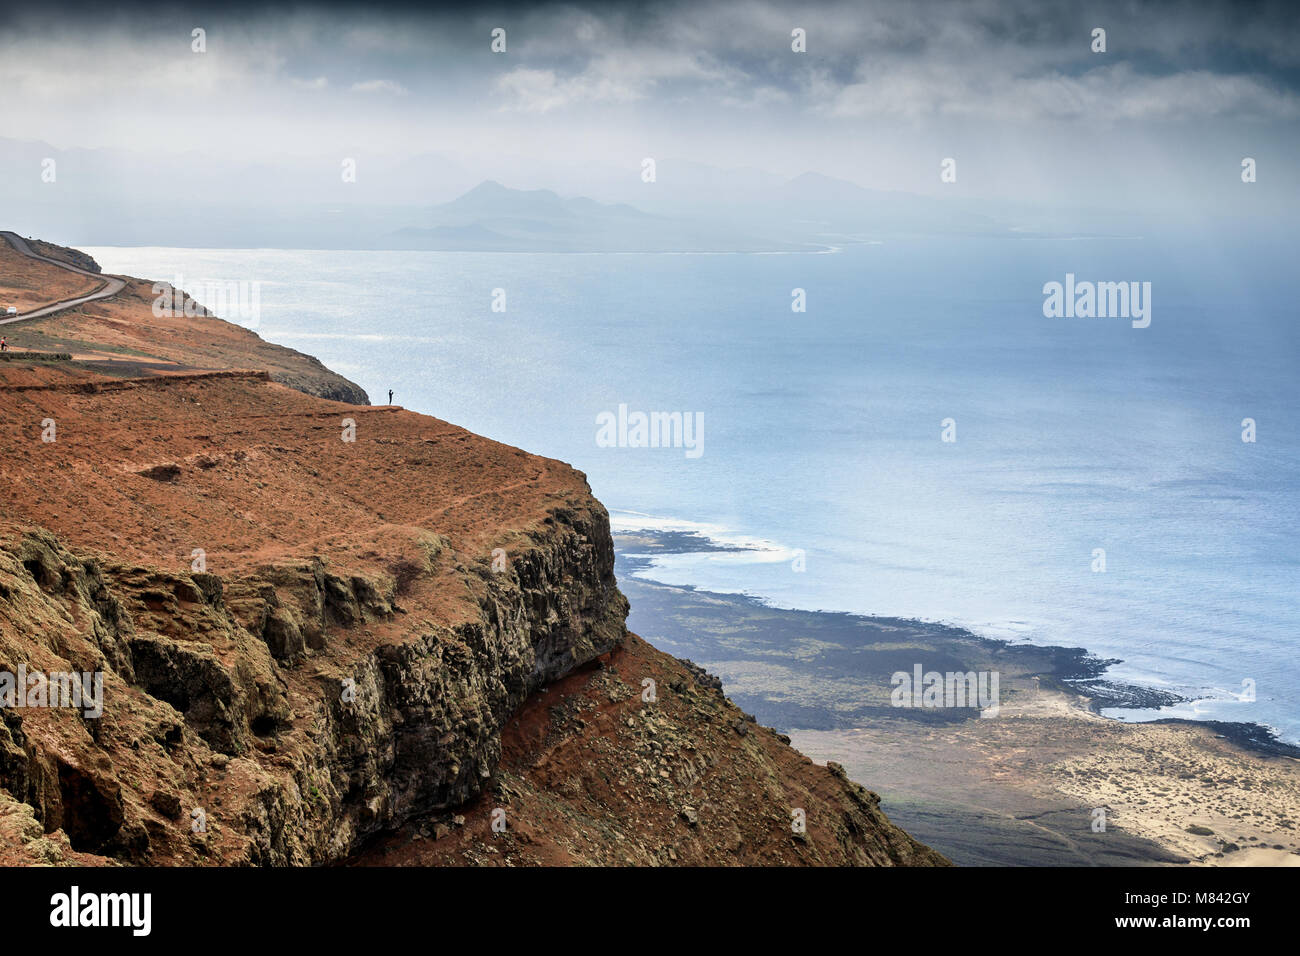 Mirador del Río ist ein Aussichtspunkt auf einem etwa 475 Meter hohen Böschung genannt Batería del Río auf Lanzarote, Kanarische Inseln, Spanien Stockfoto